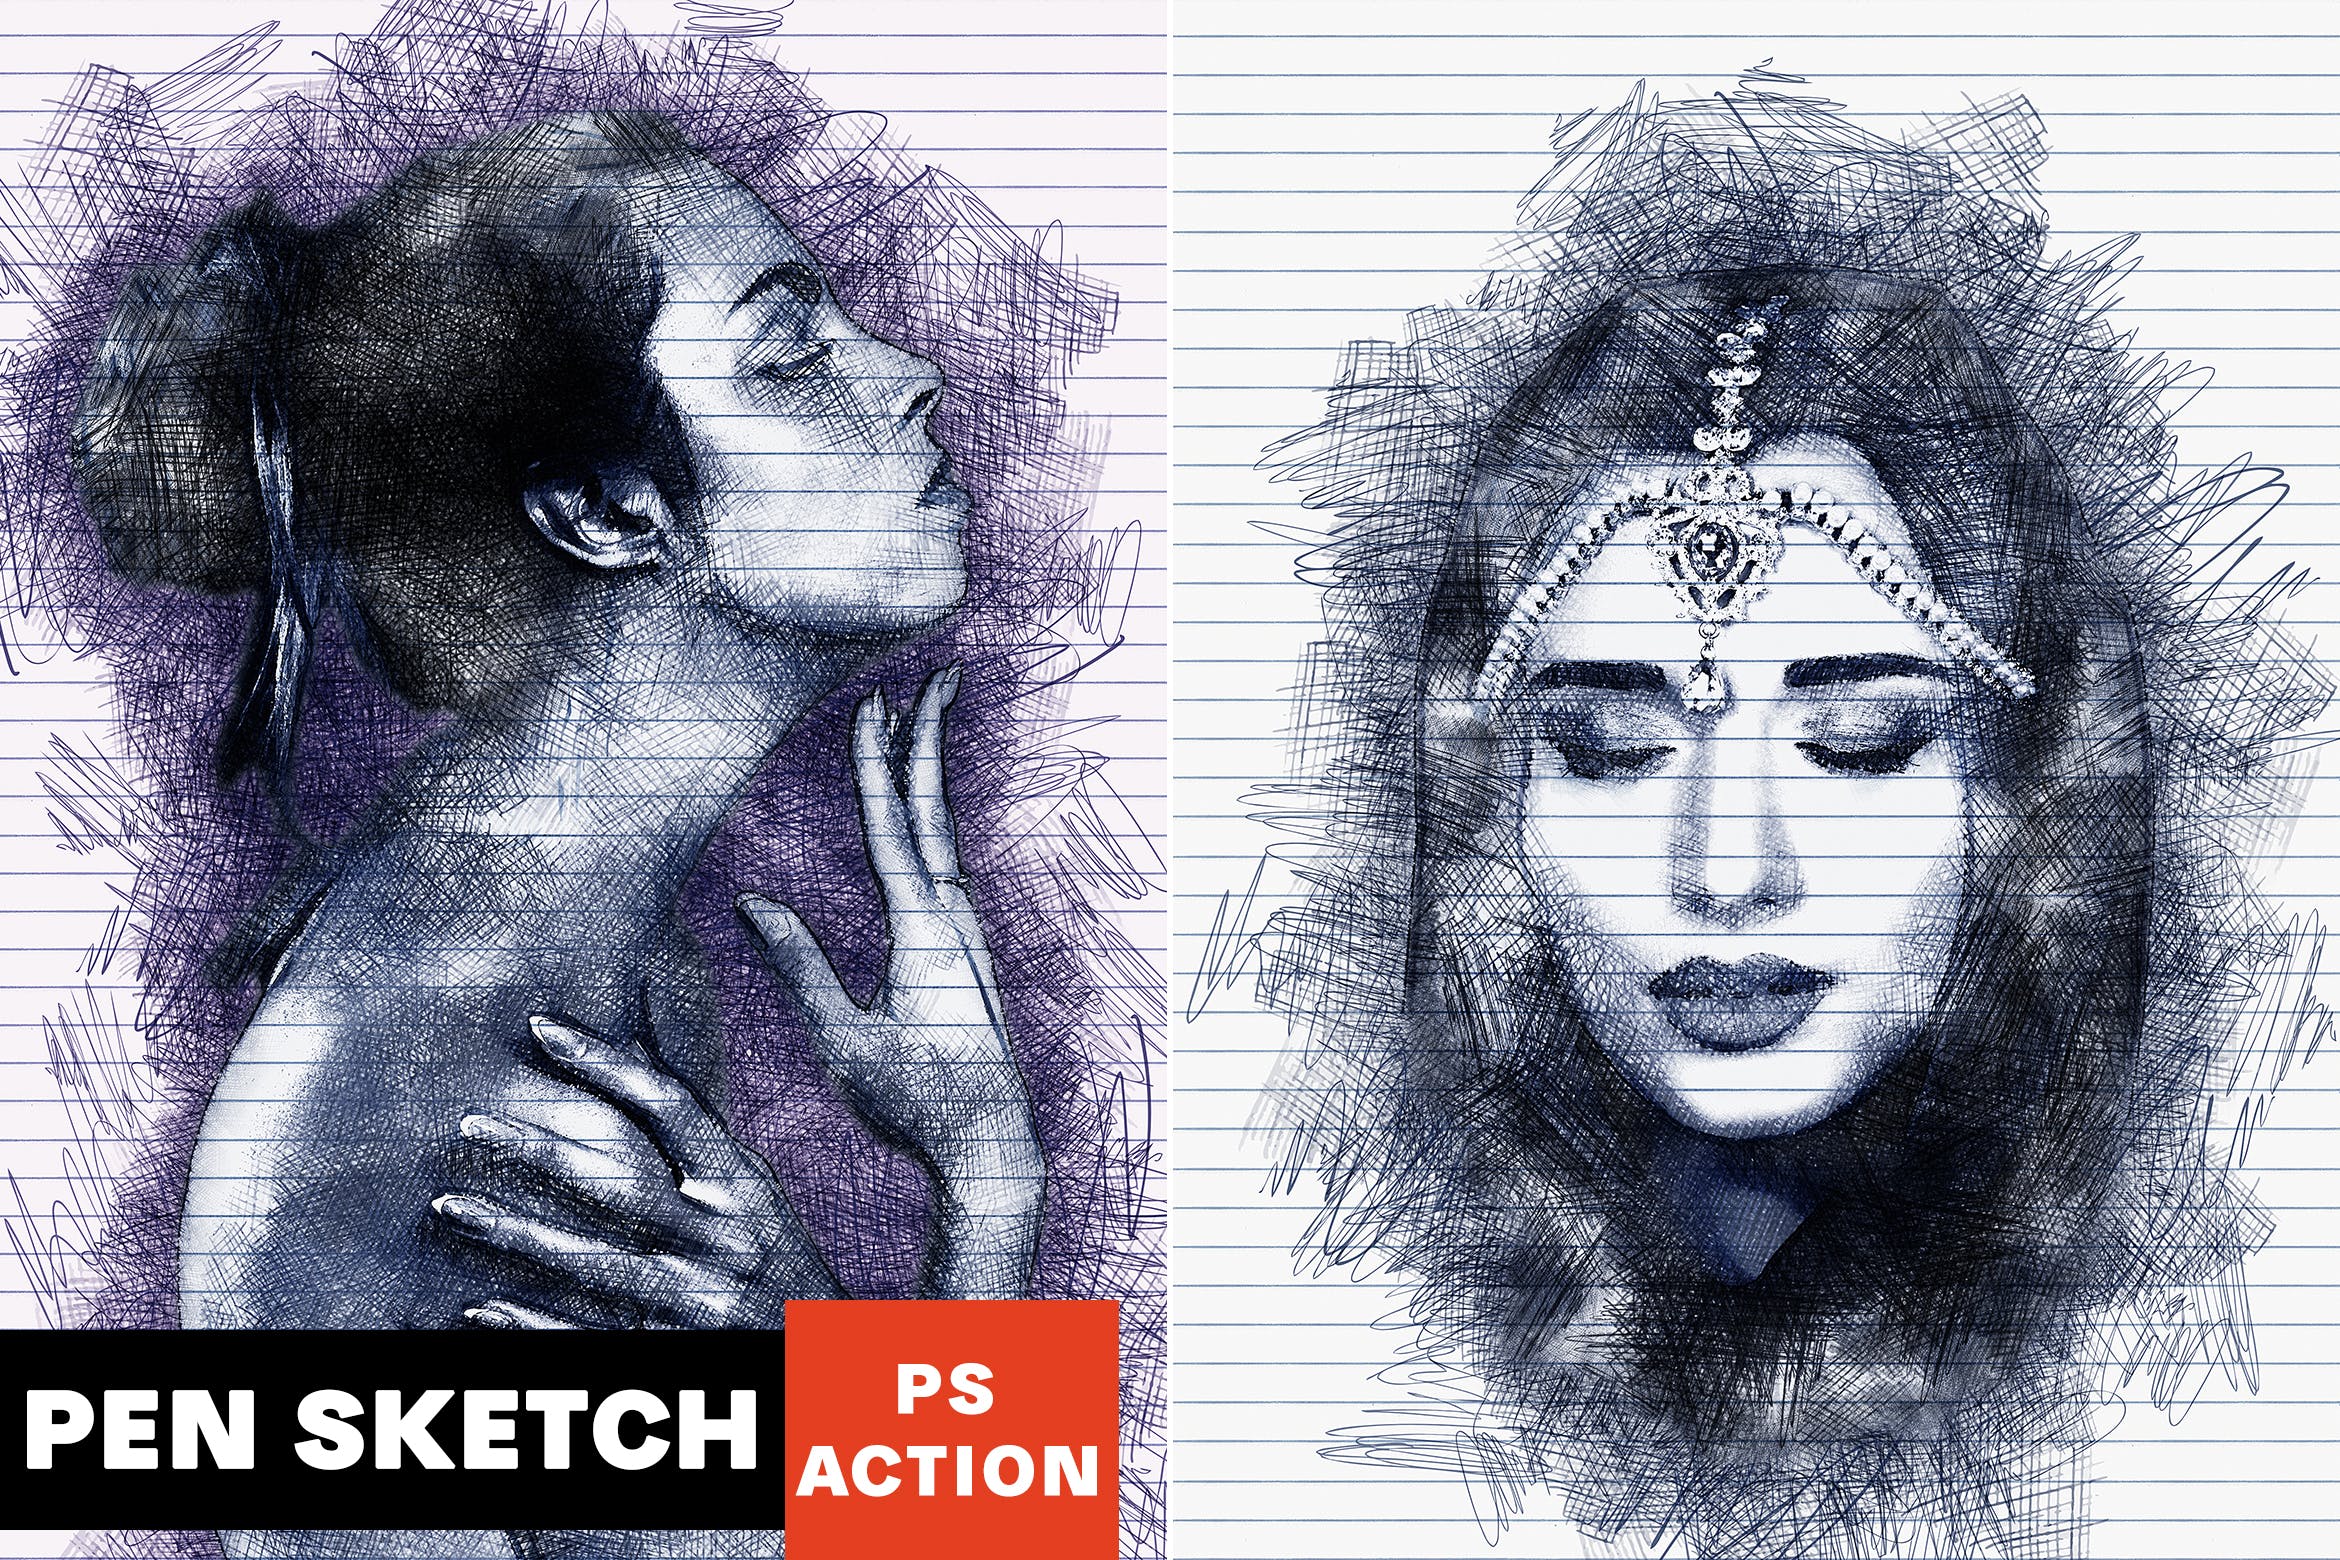 逼真铅笔素描手绘艺术效果第一素材精选PS动作 Pen Sketch Photoshop Action插图